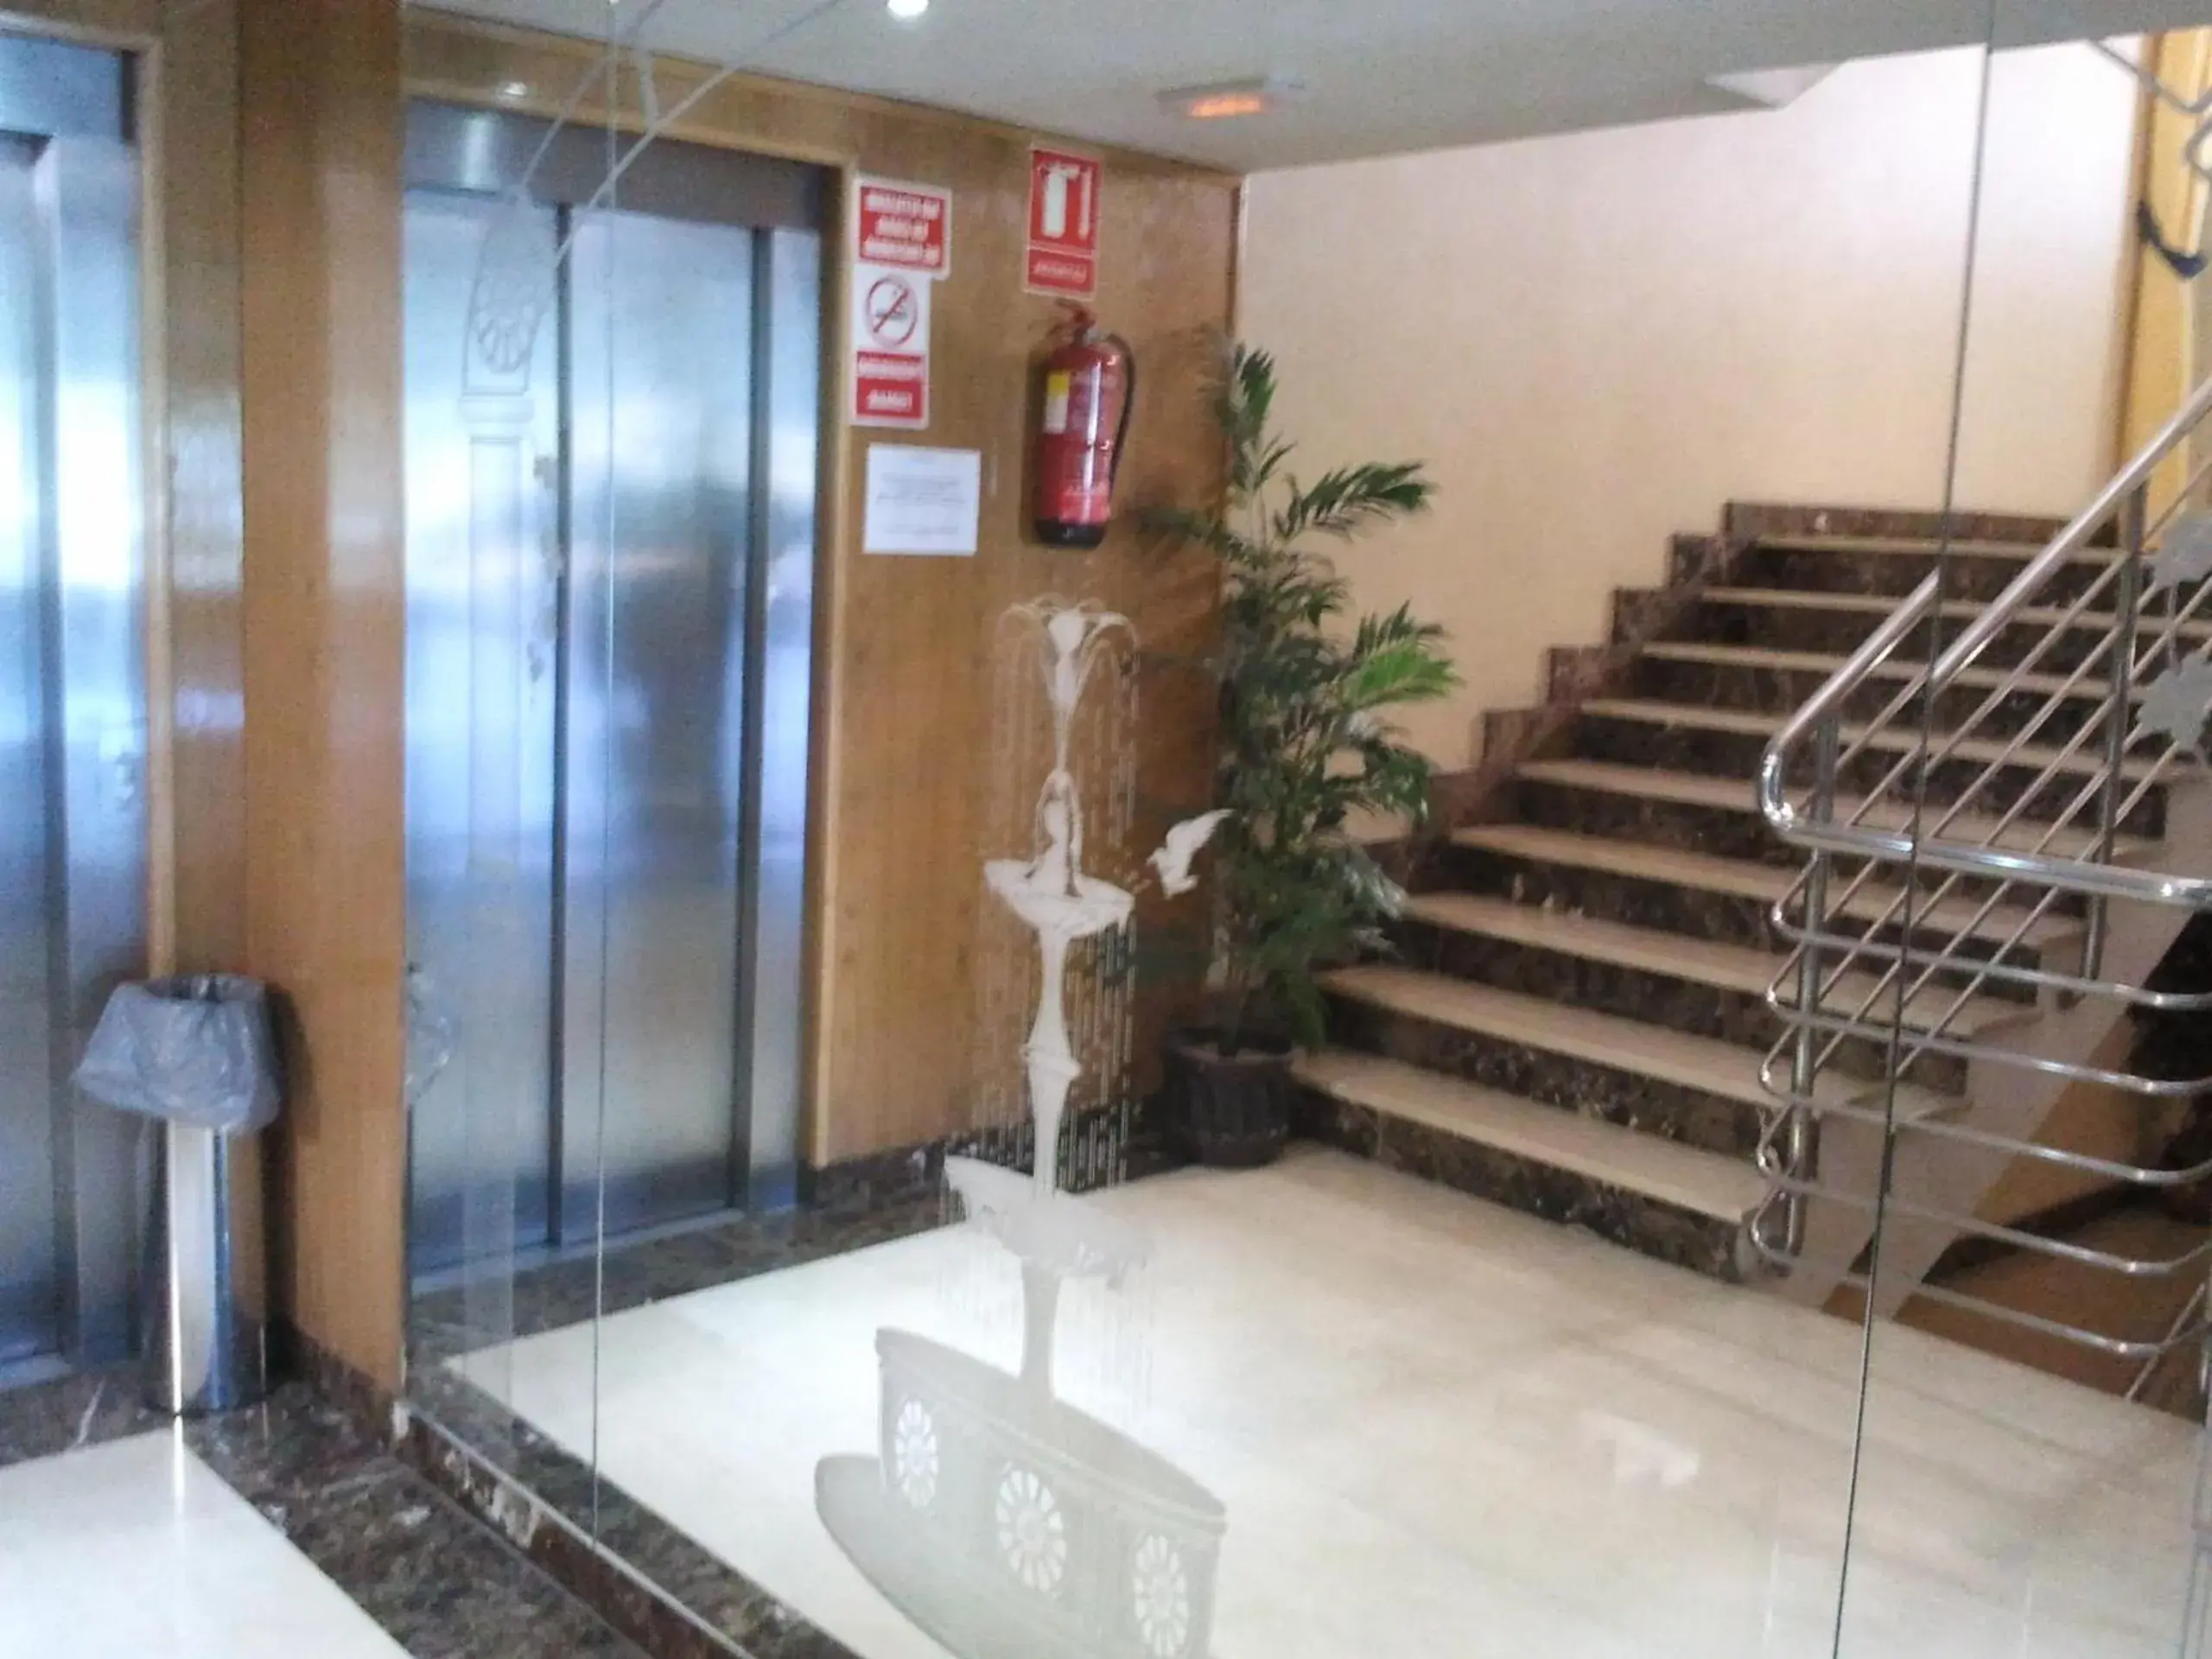 Lobby or reception in Hotel Ciudad de Fuenlabrada